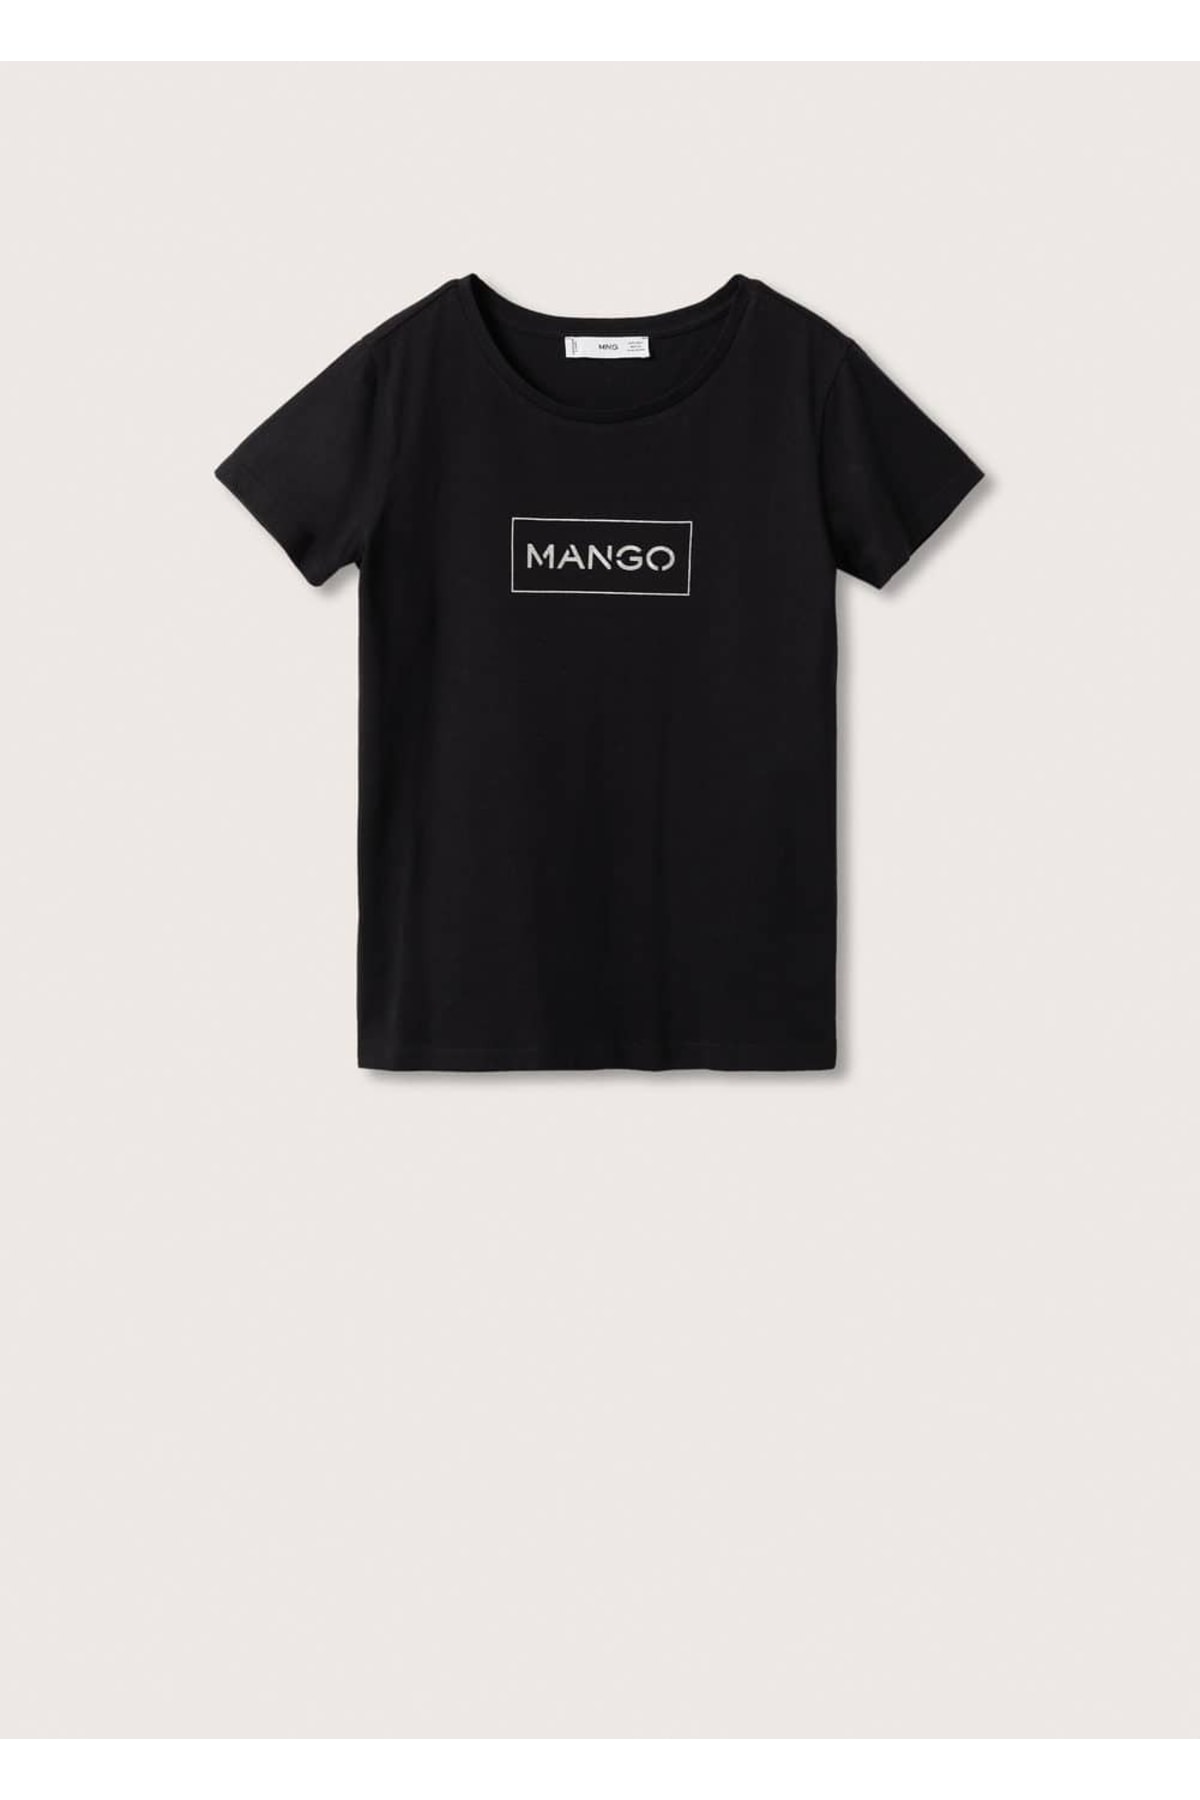 تی شرت پنبه ای زنانه مشکی مانگو MANGO (برند اسپانیا)